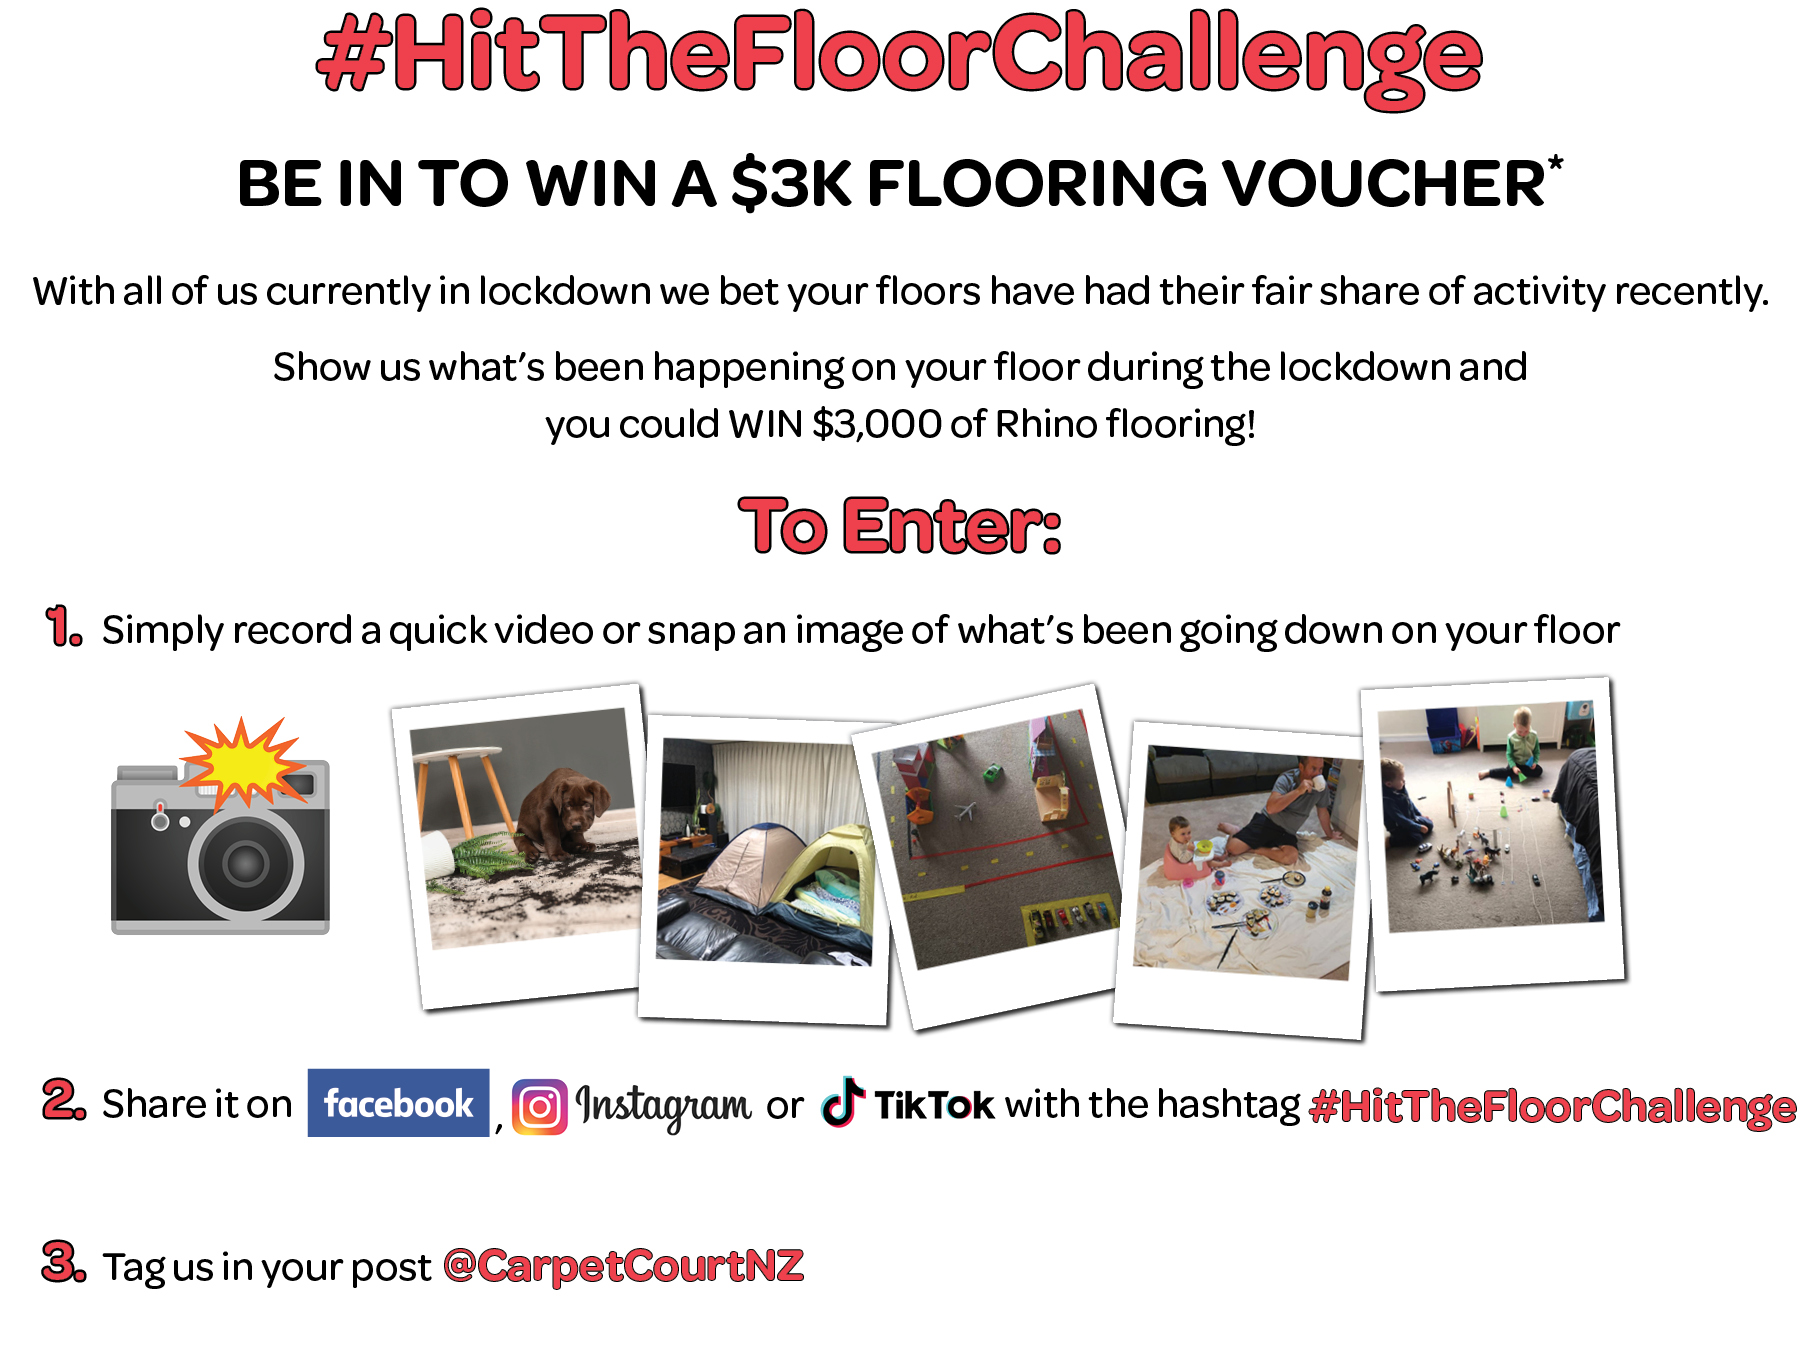 Hit The Floor Challenge Instructions